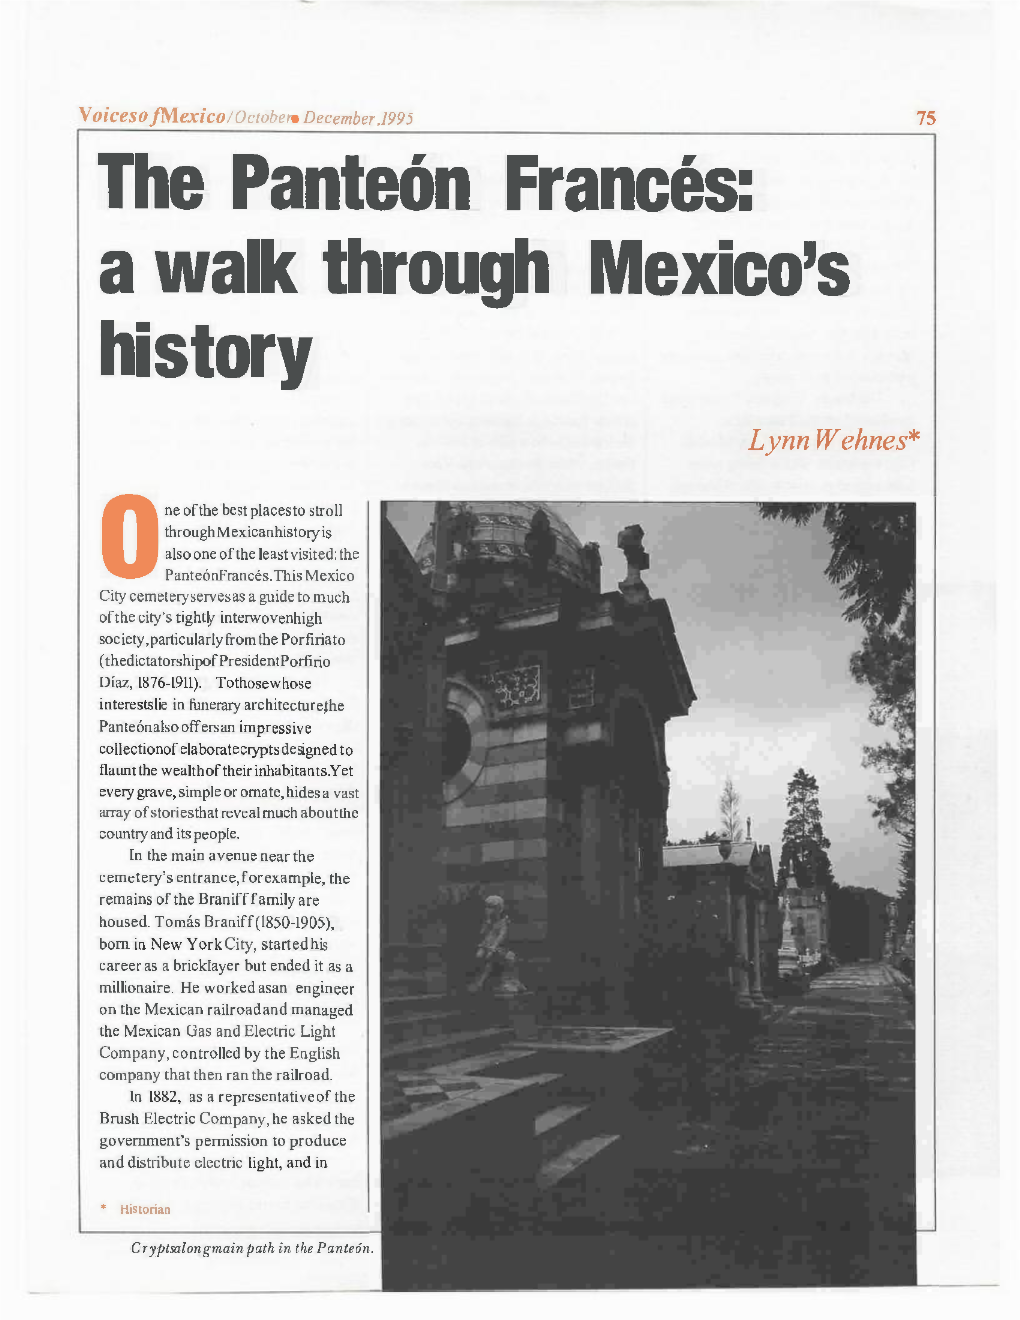 The Panteón Francés: a Walk Through Mexico's History